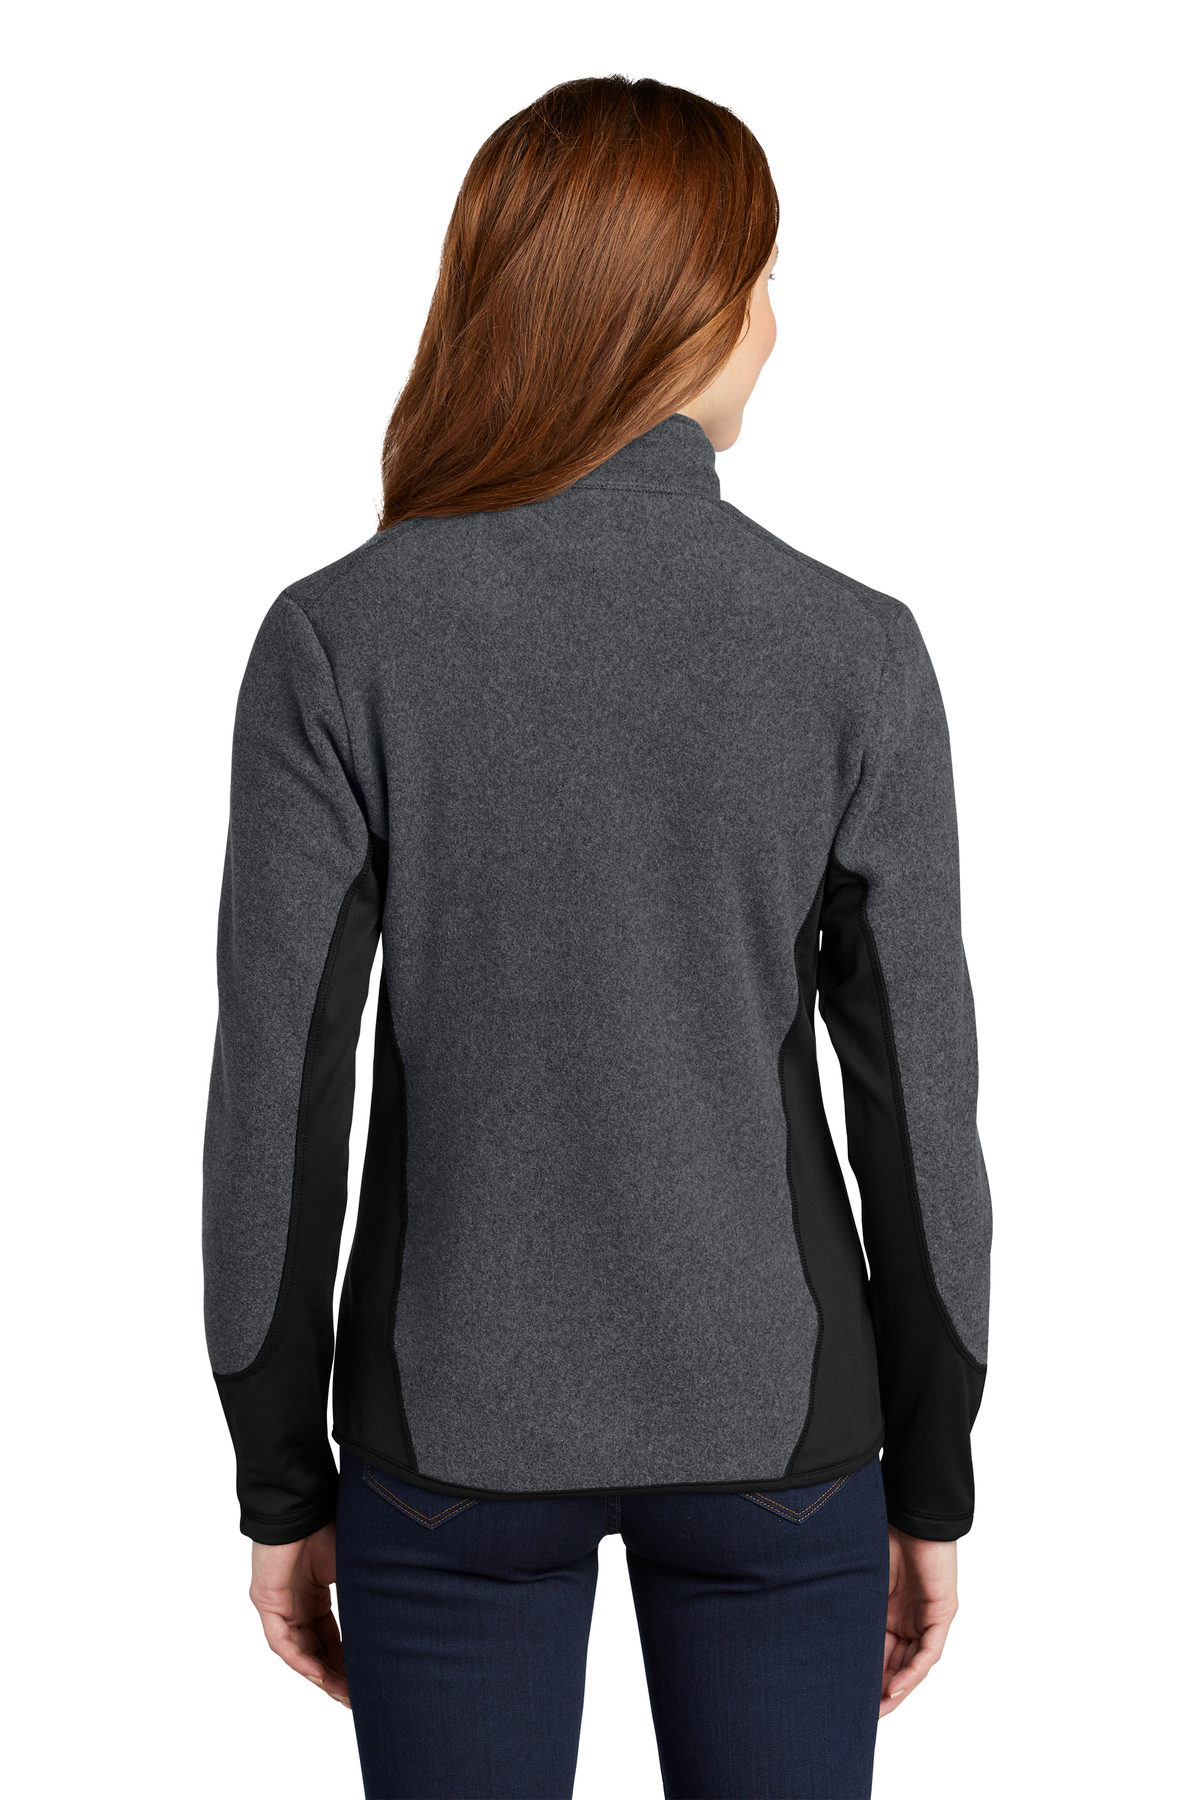 Port Authority Ladies R-Tek Pro Fleece Full-Zip Jacket | Product | SanMar